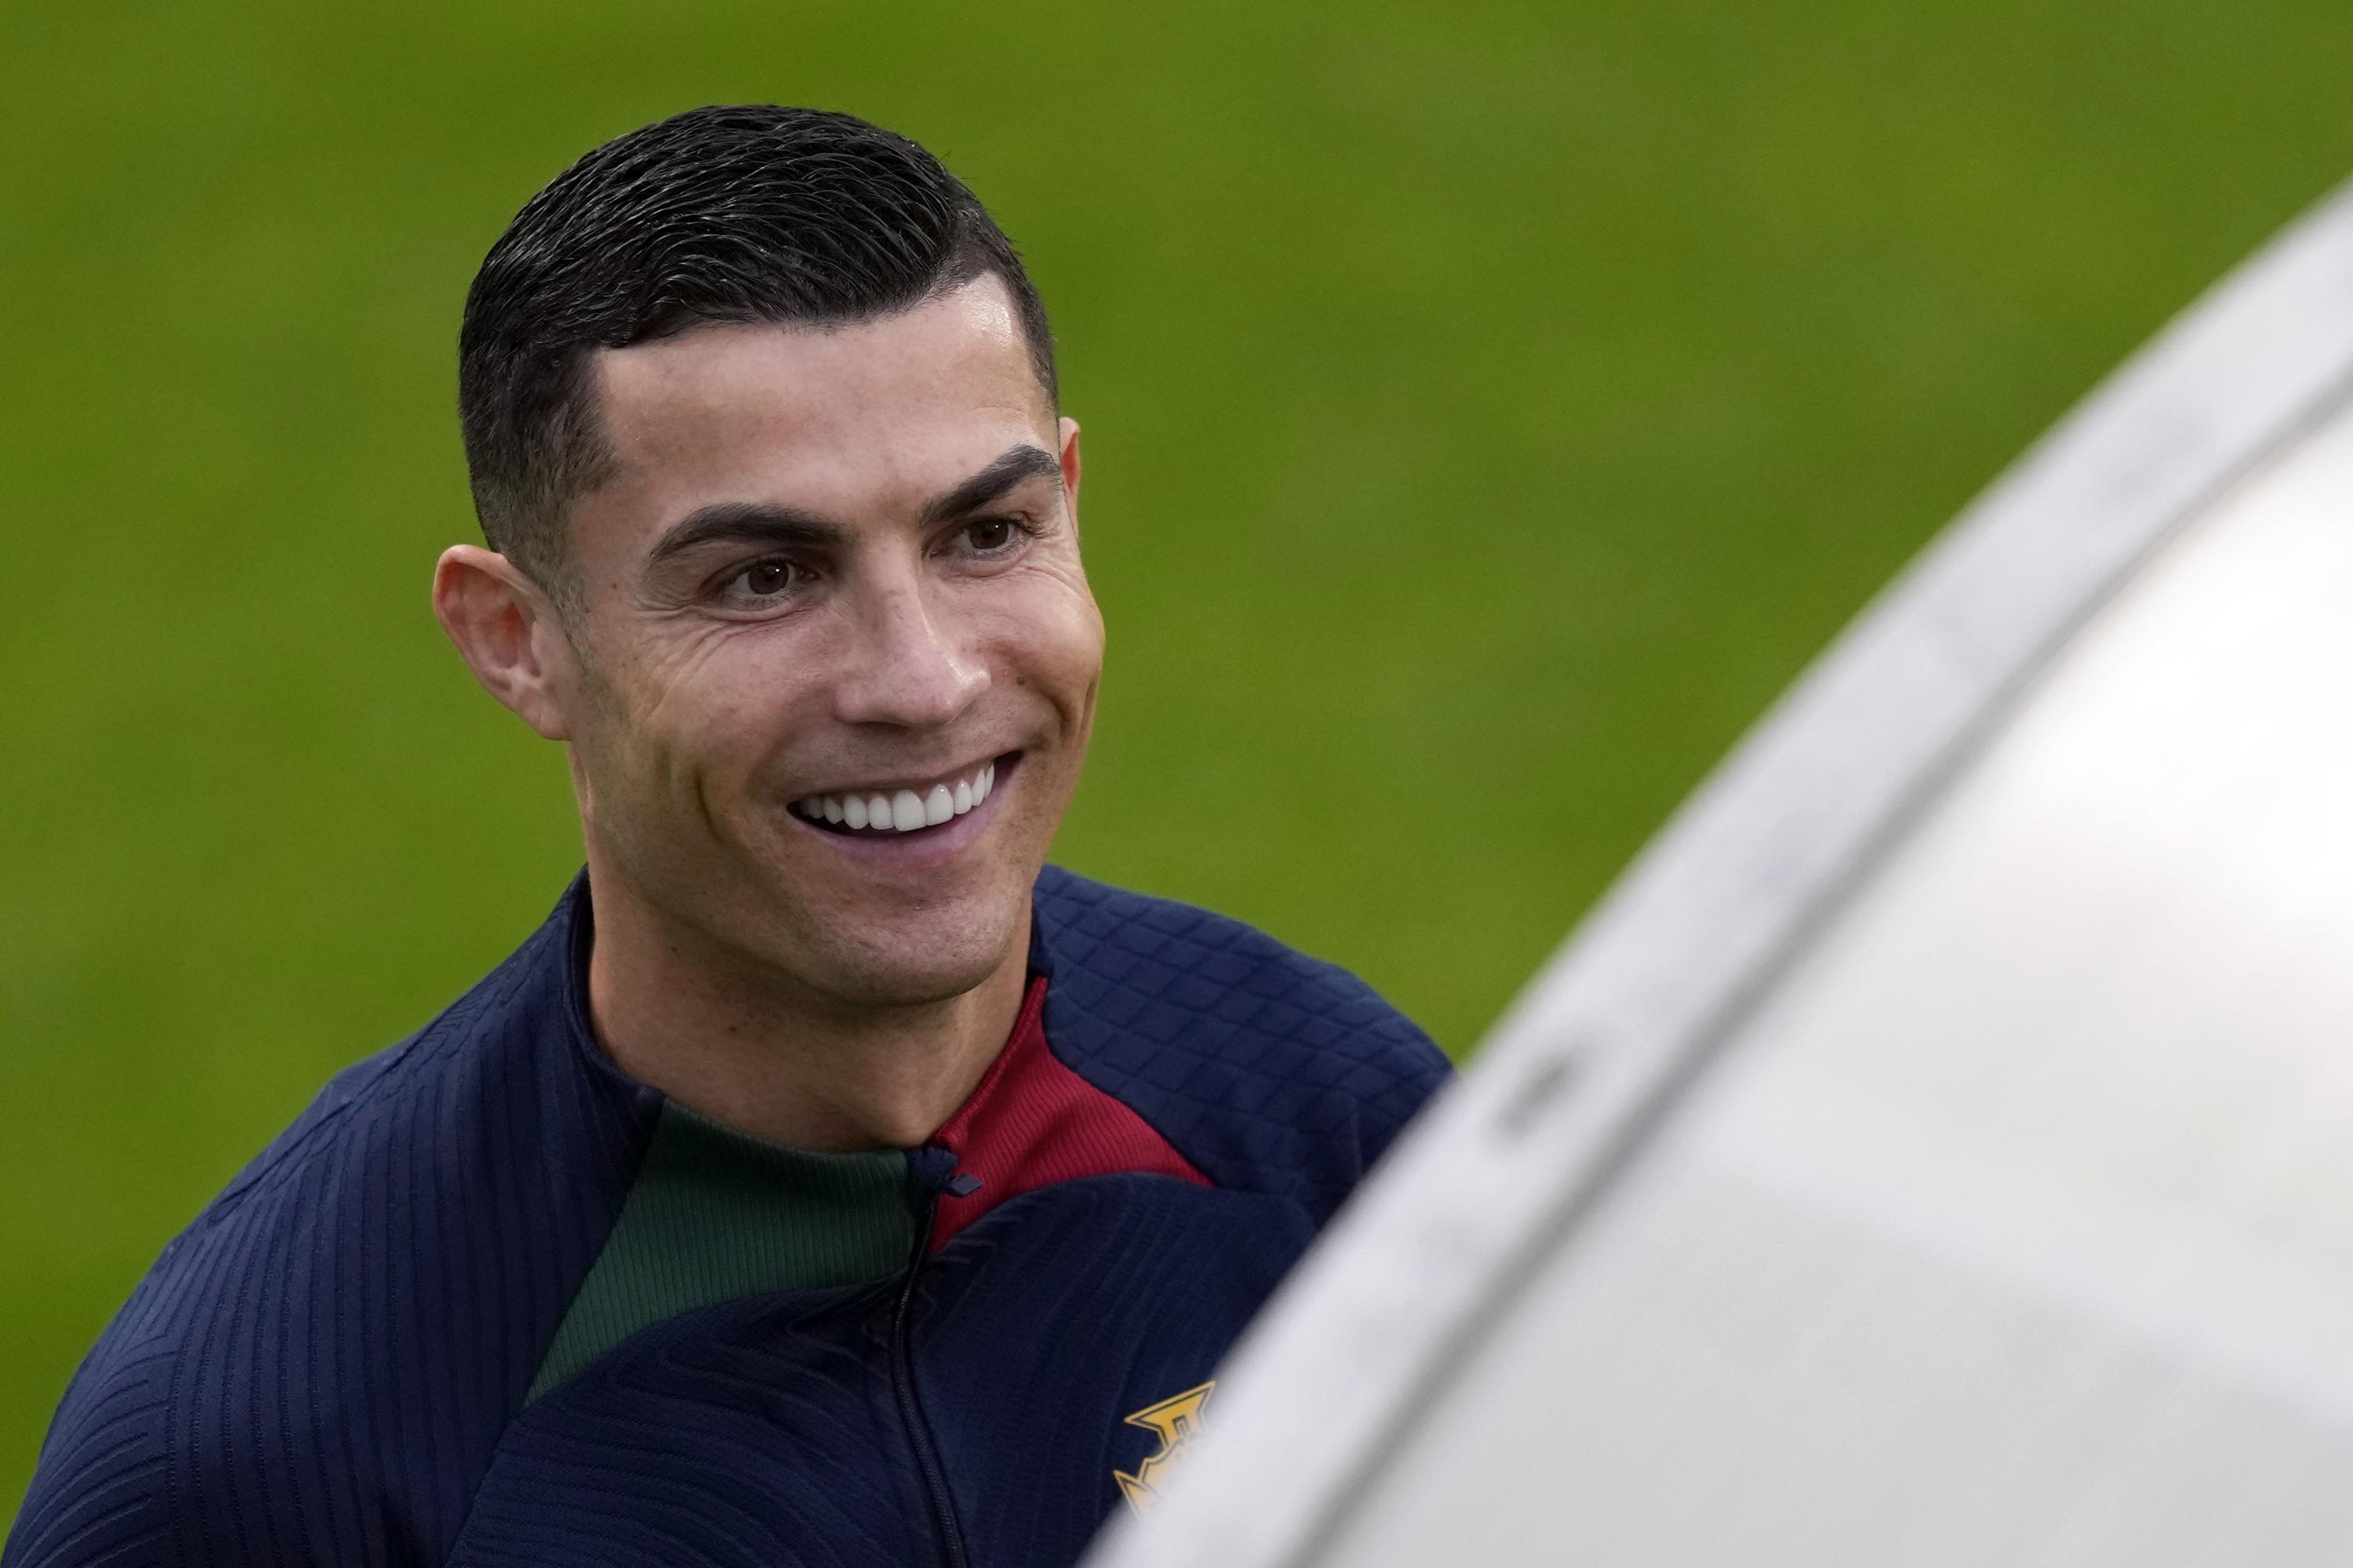 Ronaldo expressa críticas contundentes ao United em entrevista